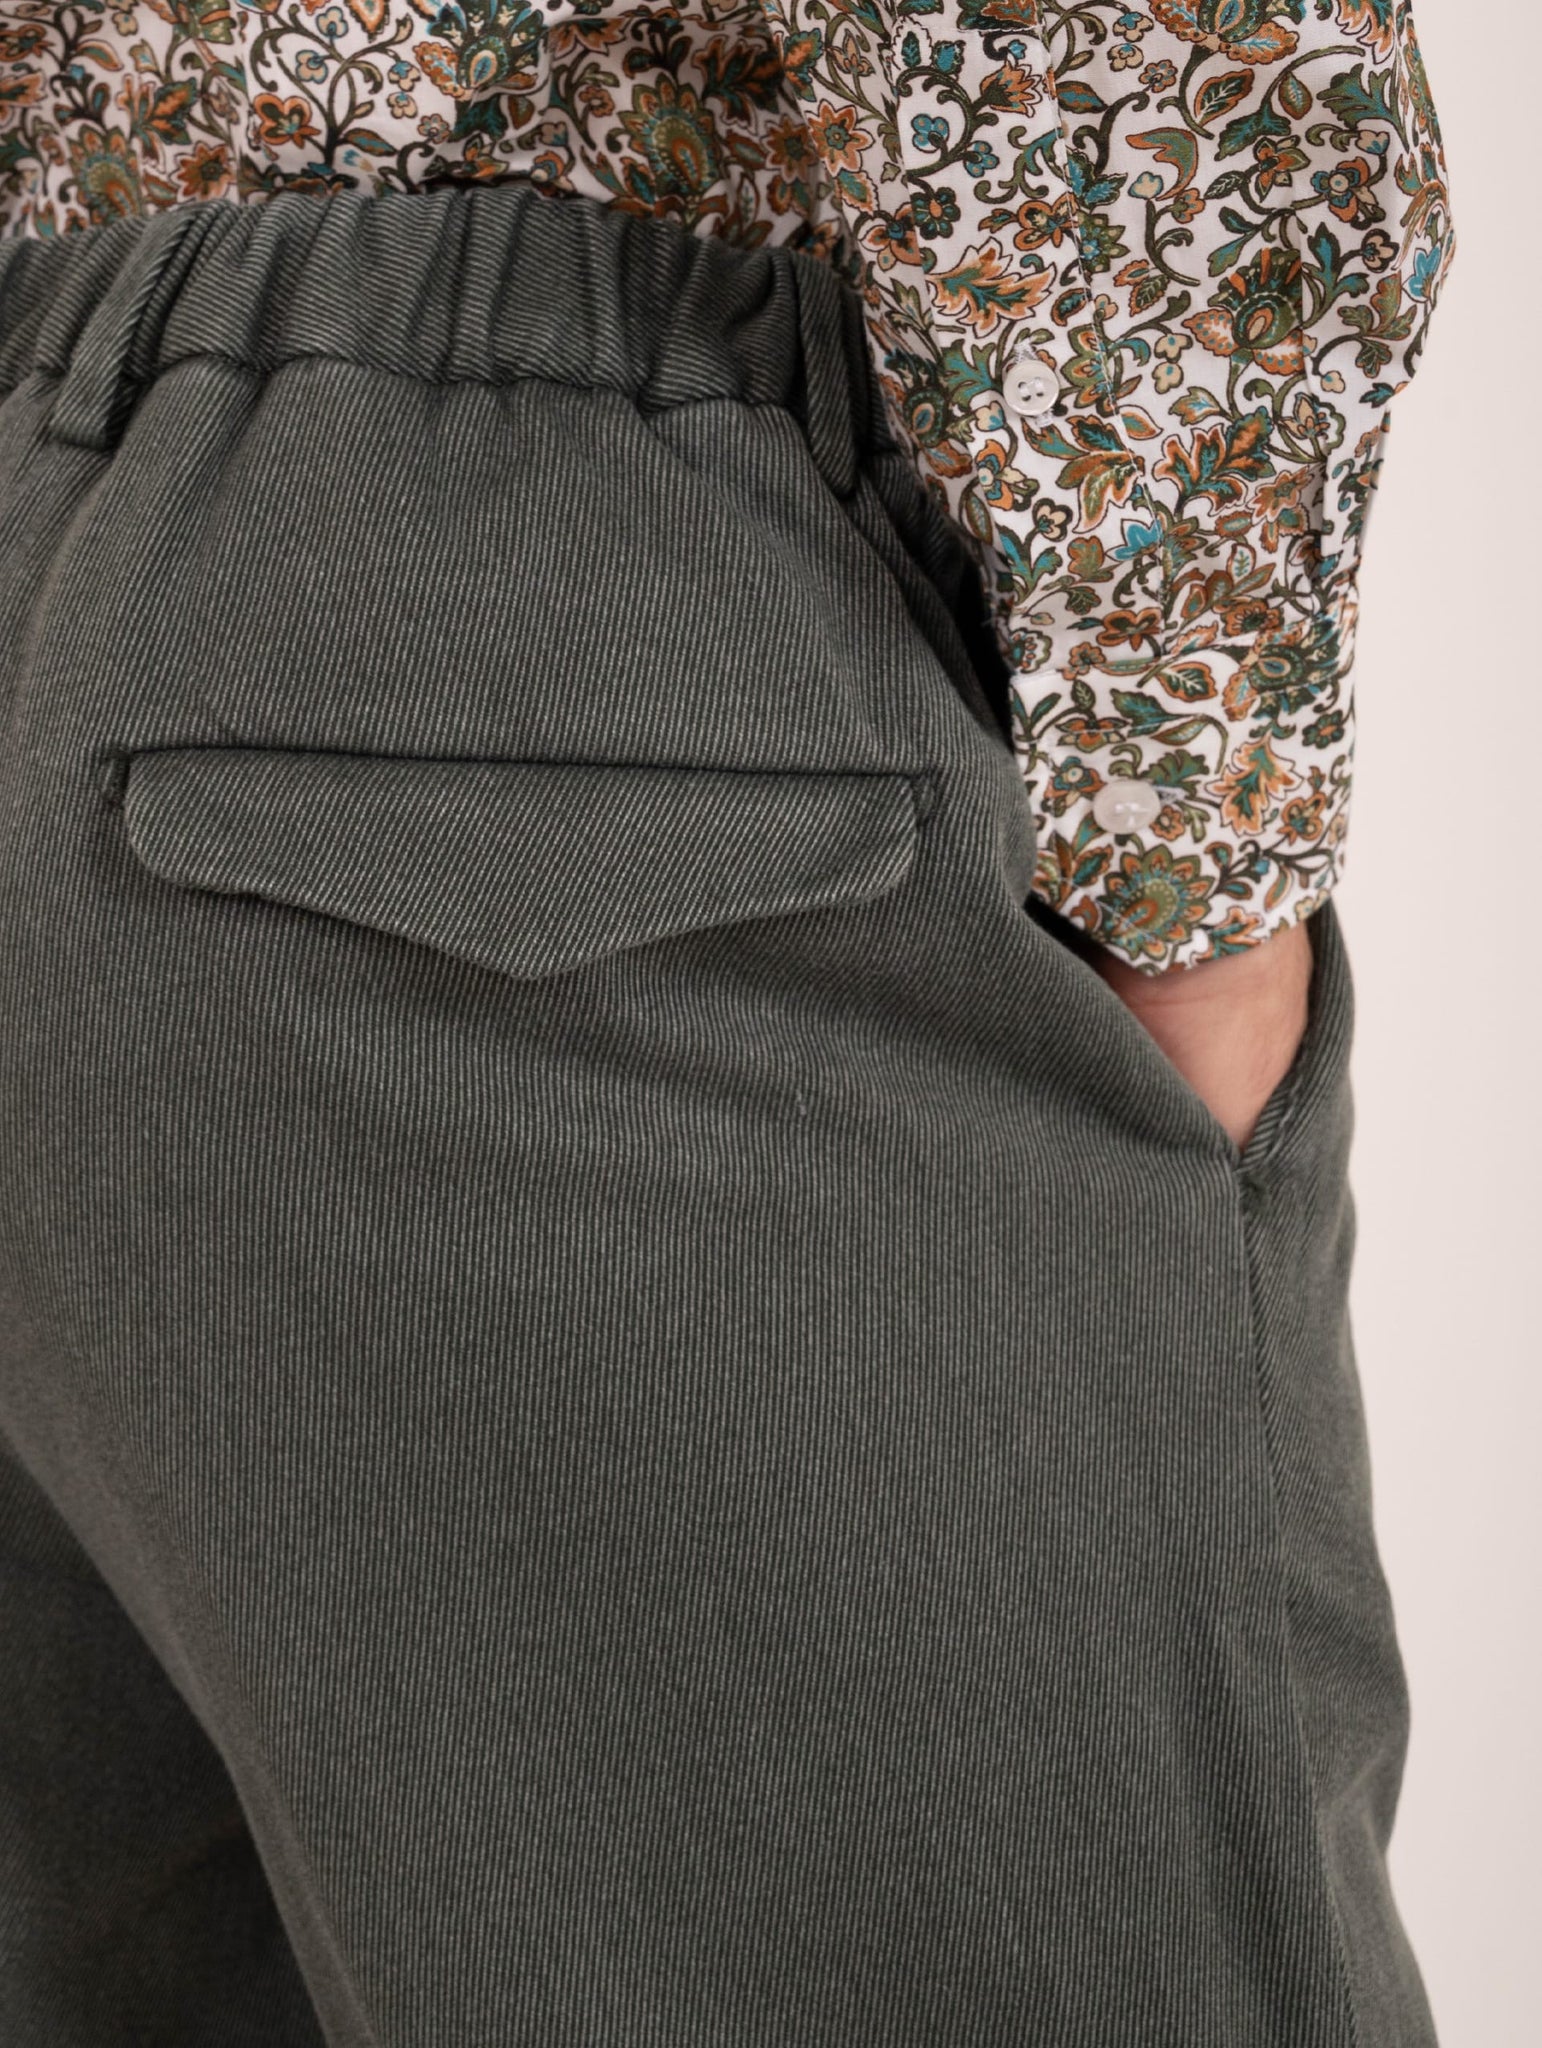 Pantalone Devore in Cotone Cover Melange Verde e Panna